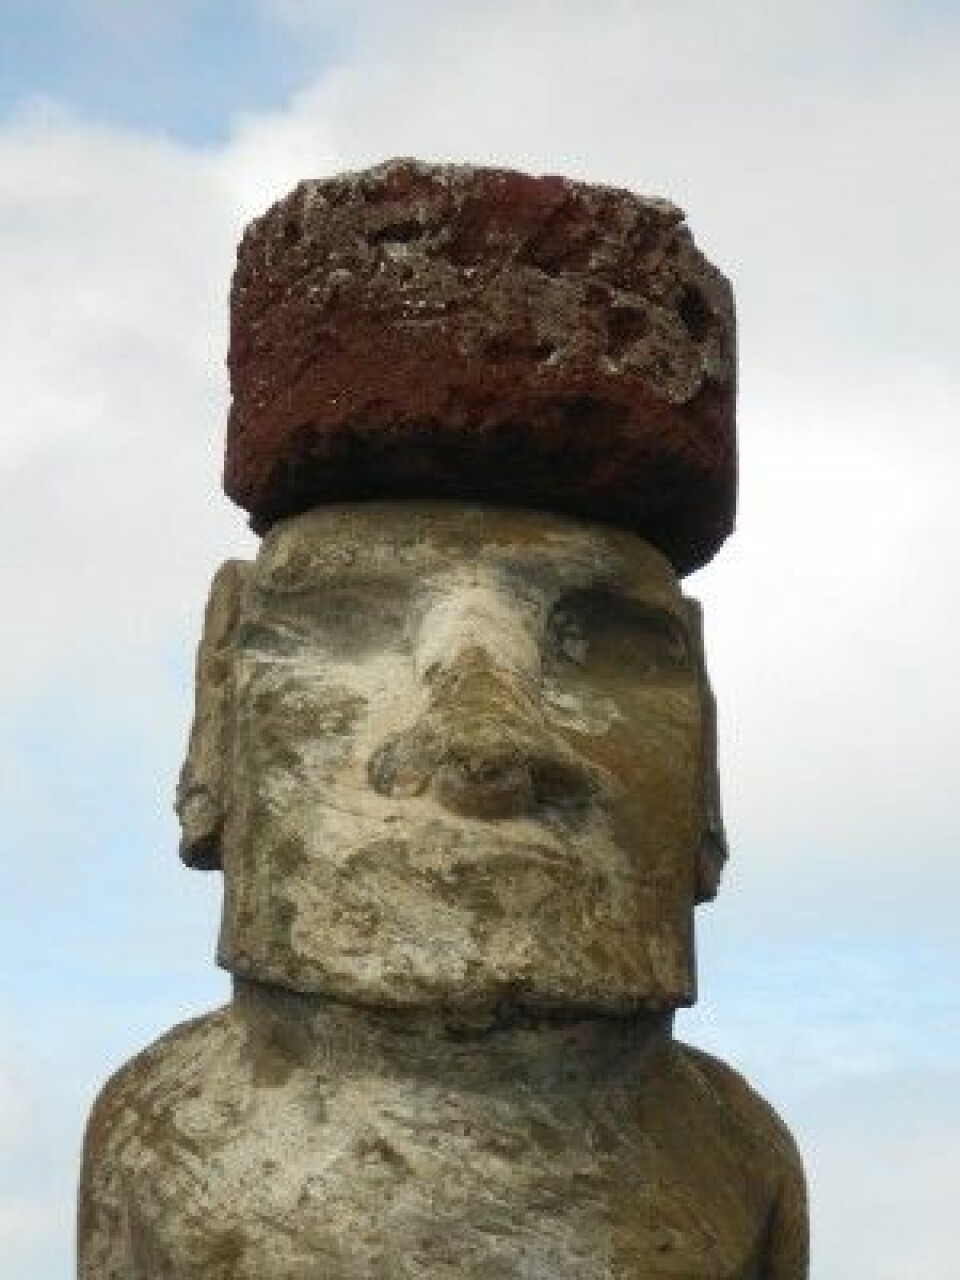 Herre min hatt! Overkropp og hodeplagg er hugget ut i ulike typer med stein. (Foto: Sean Hixon)